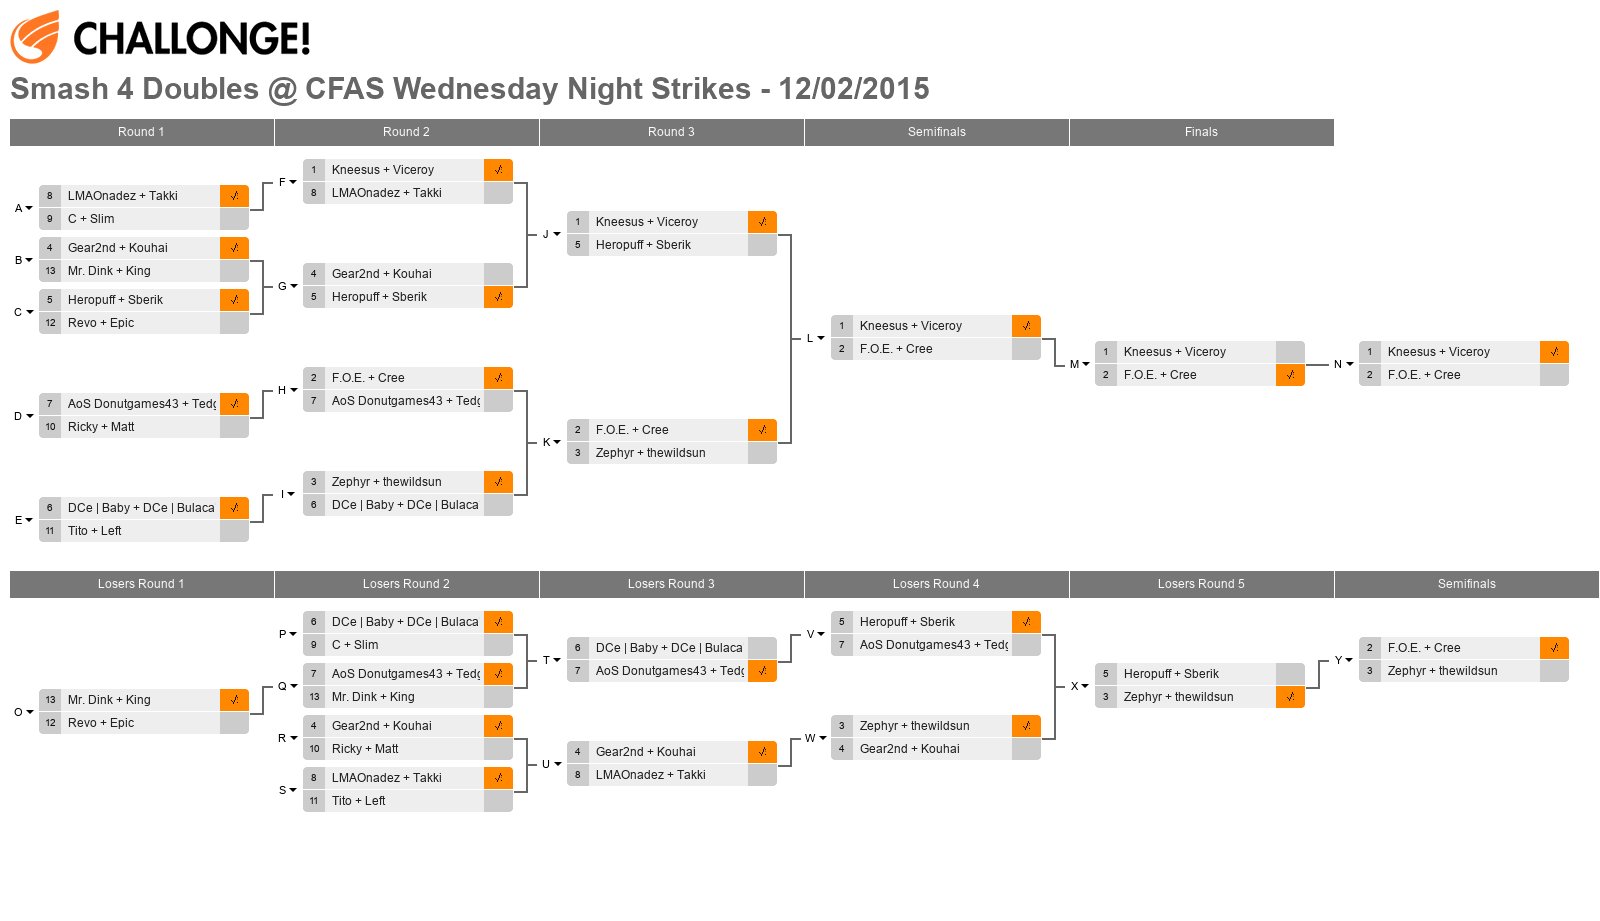 Smash 4 Doubles @ CFAS Wednesday Night Strikes - 12/02/2015